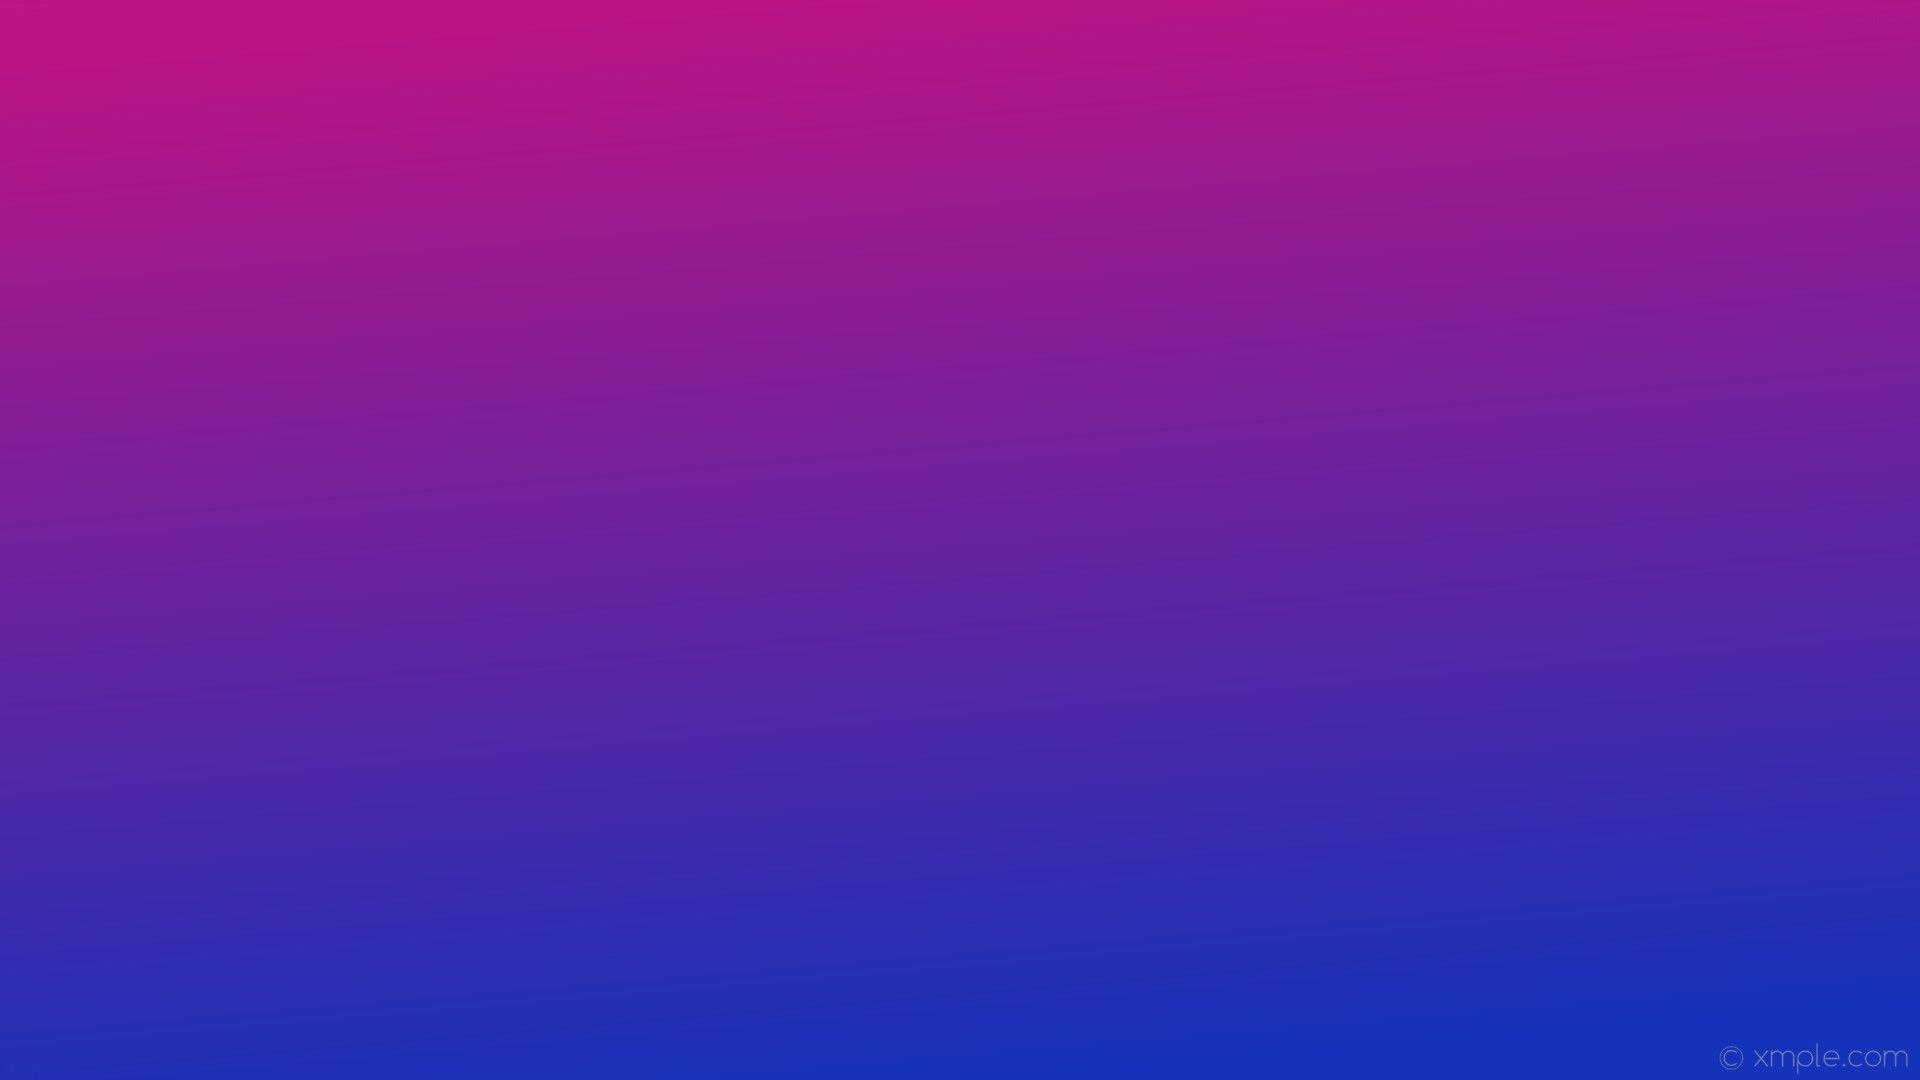 Pink Purple Blue Ombre Wallpaper 4k HD